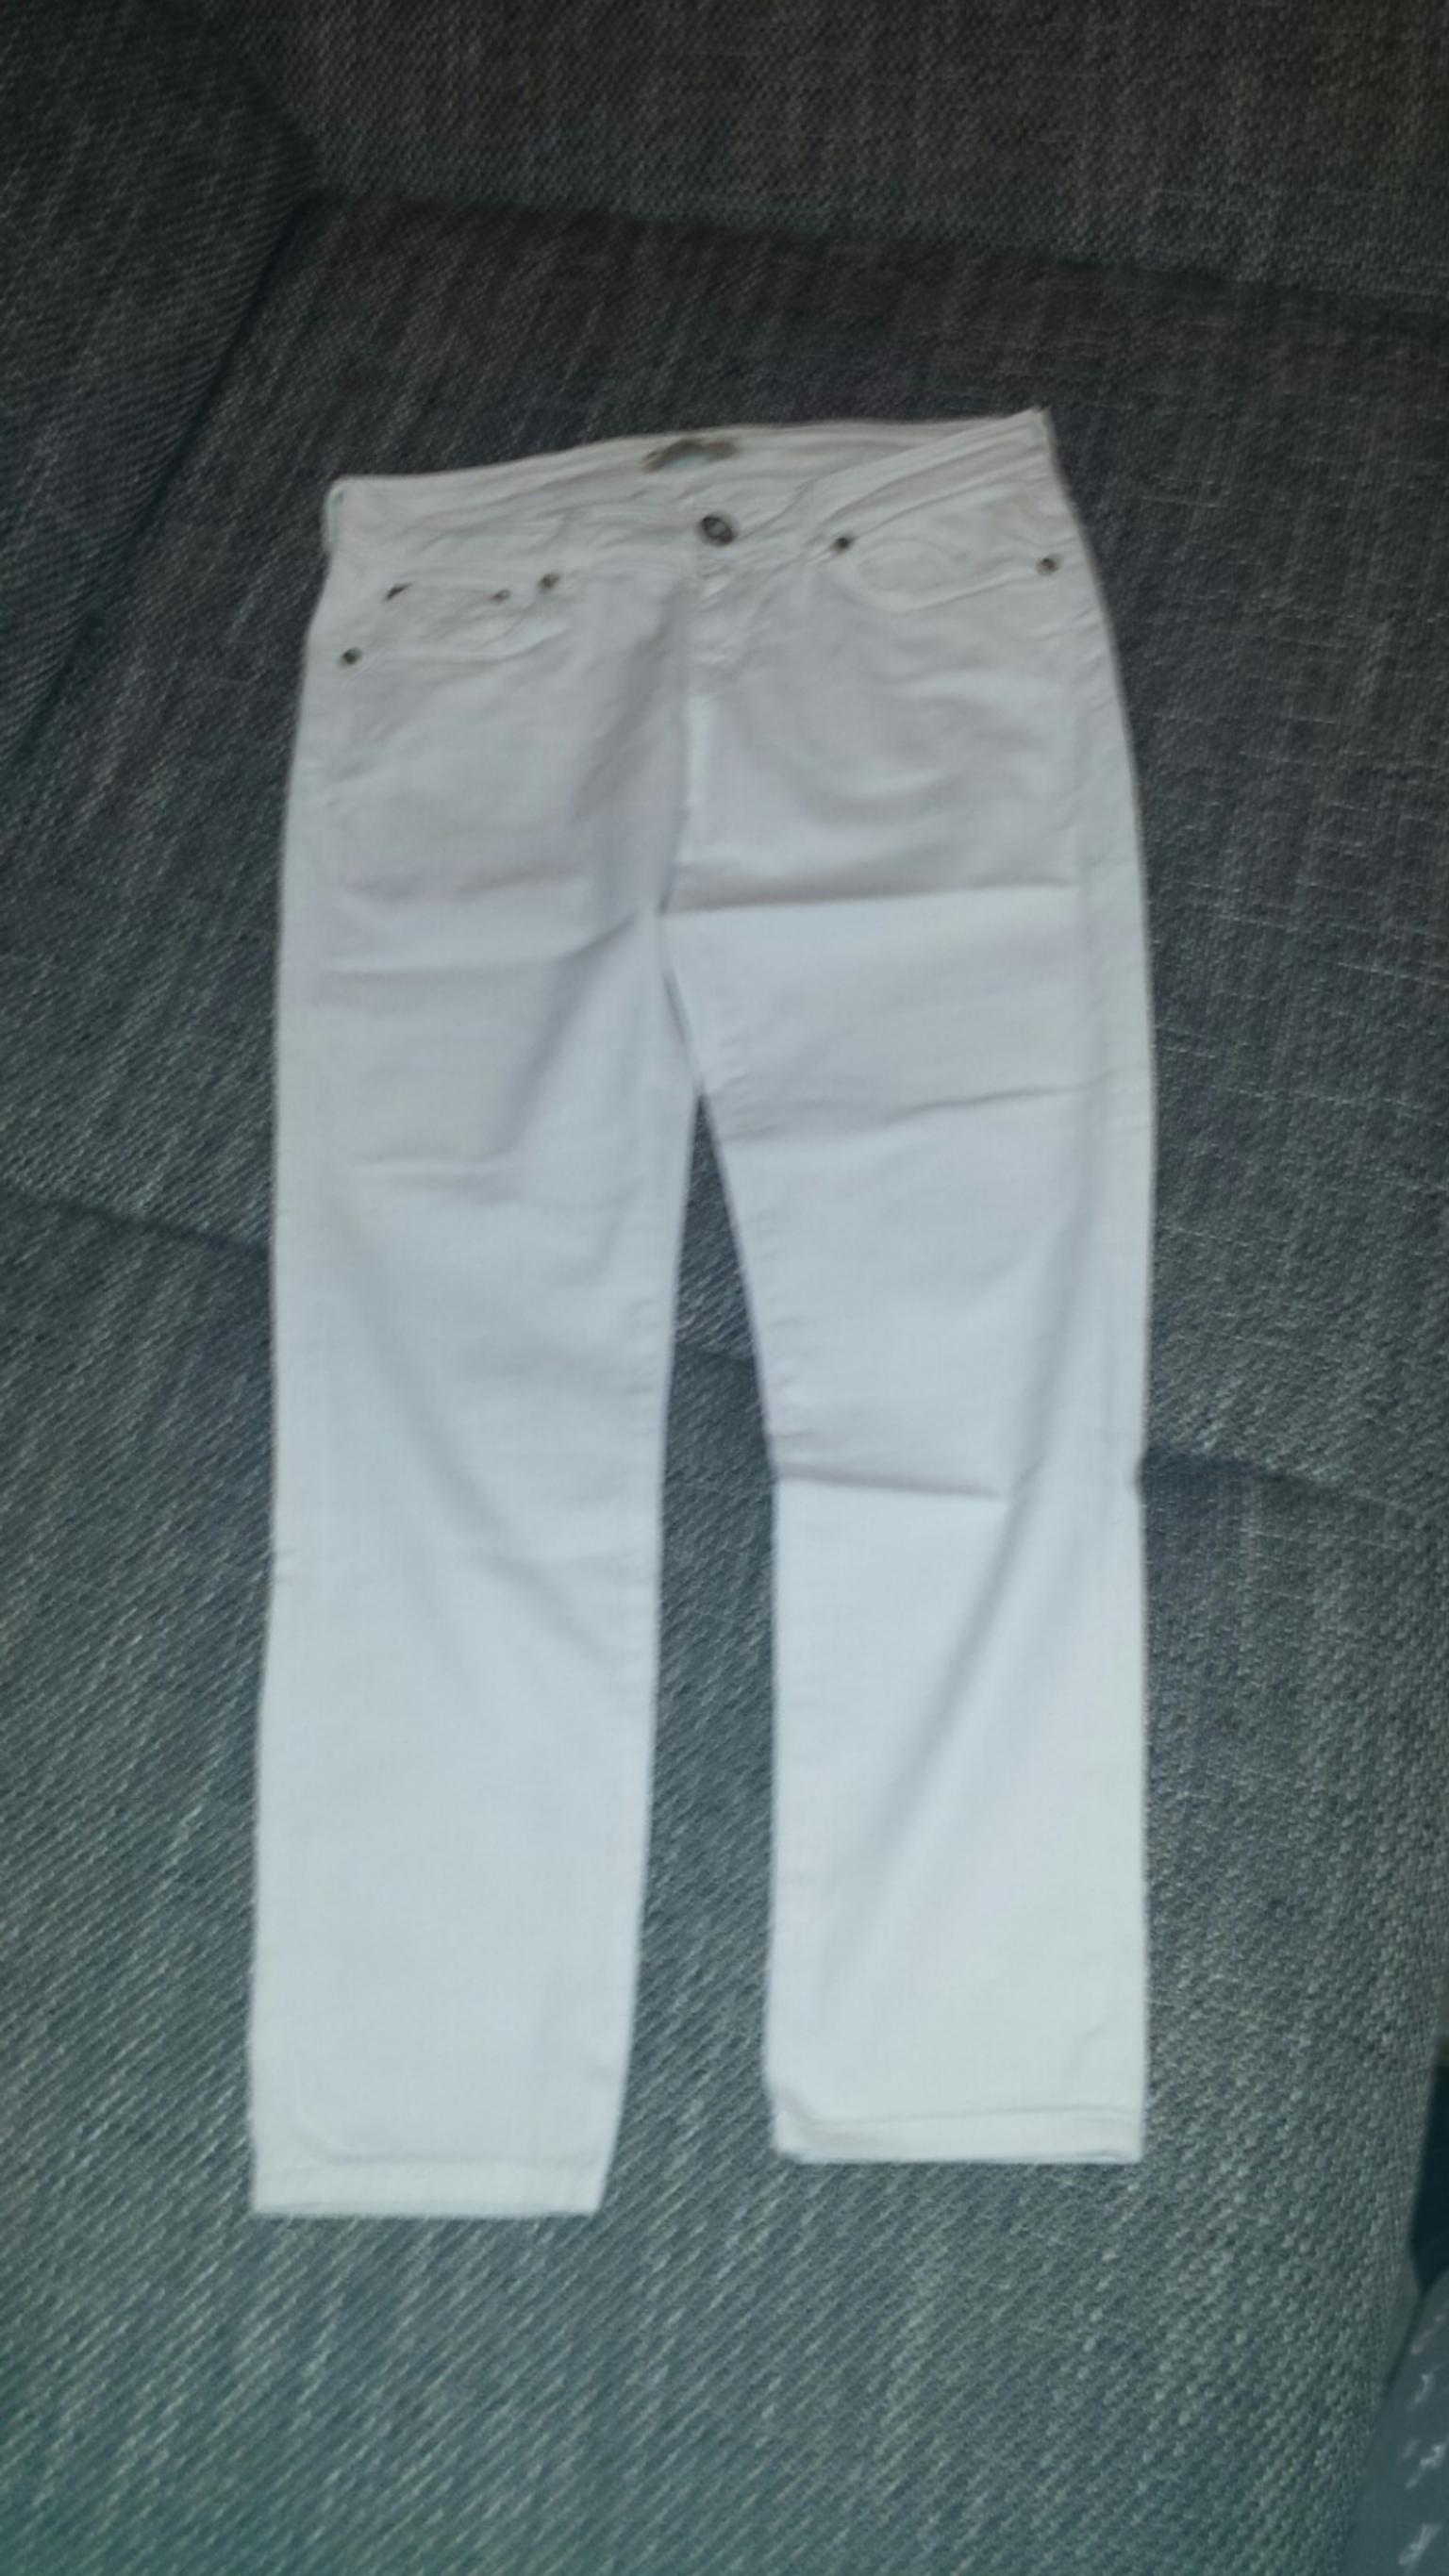 Damen Hose Jeans In 88456 Ingoldingen For 10 00 For Sale Shpock